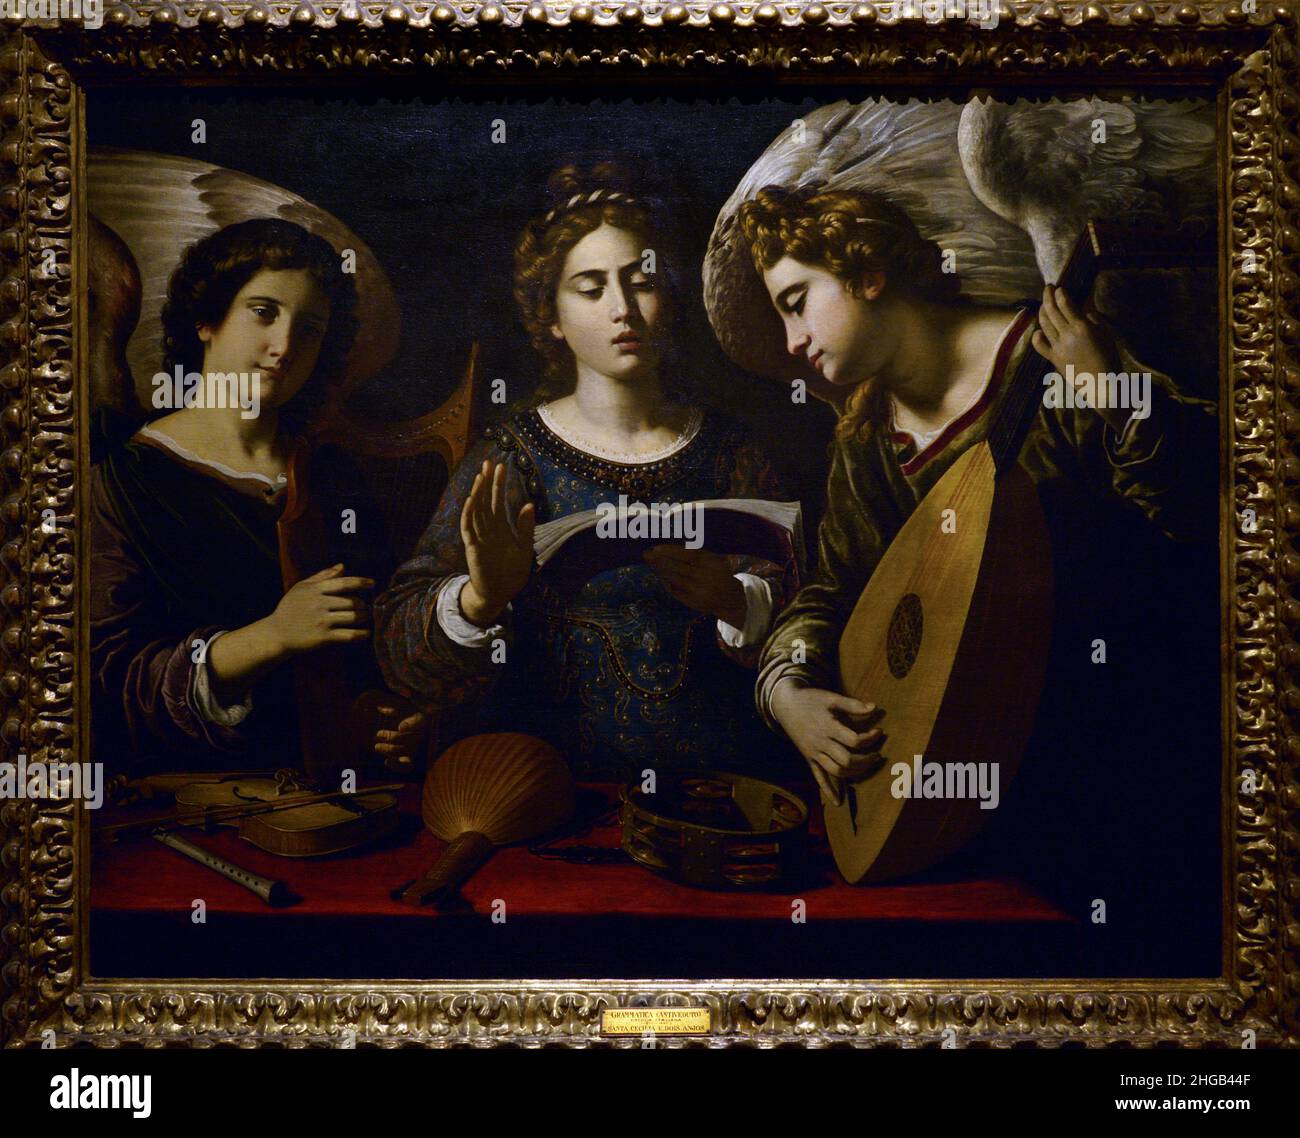 Antiveduto Grammatica (1571-1626). Italienischer Maler. Die heilige Cecilia mit zwei Engeln, um 1620. Öl auf Leinwand (100 x 126 cm). Nationalmuseum für Alte Kunst Lissabon, Portugal. Stockfoto